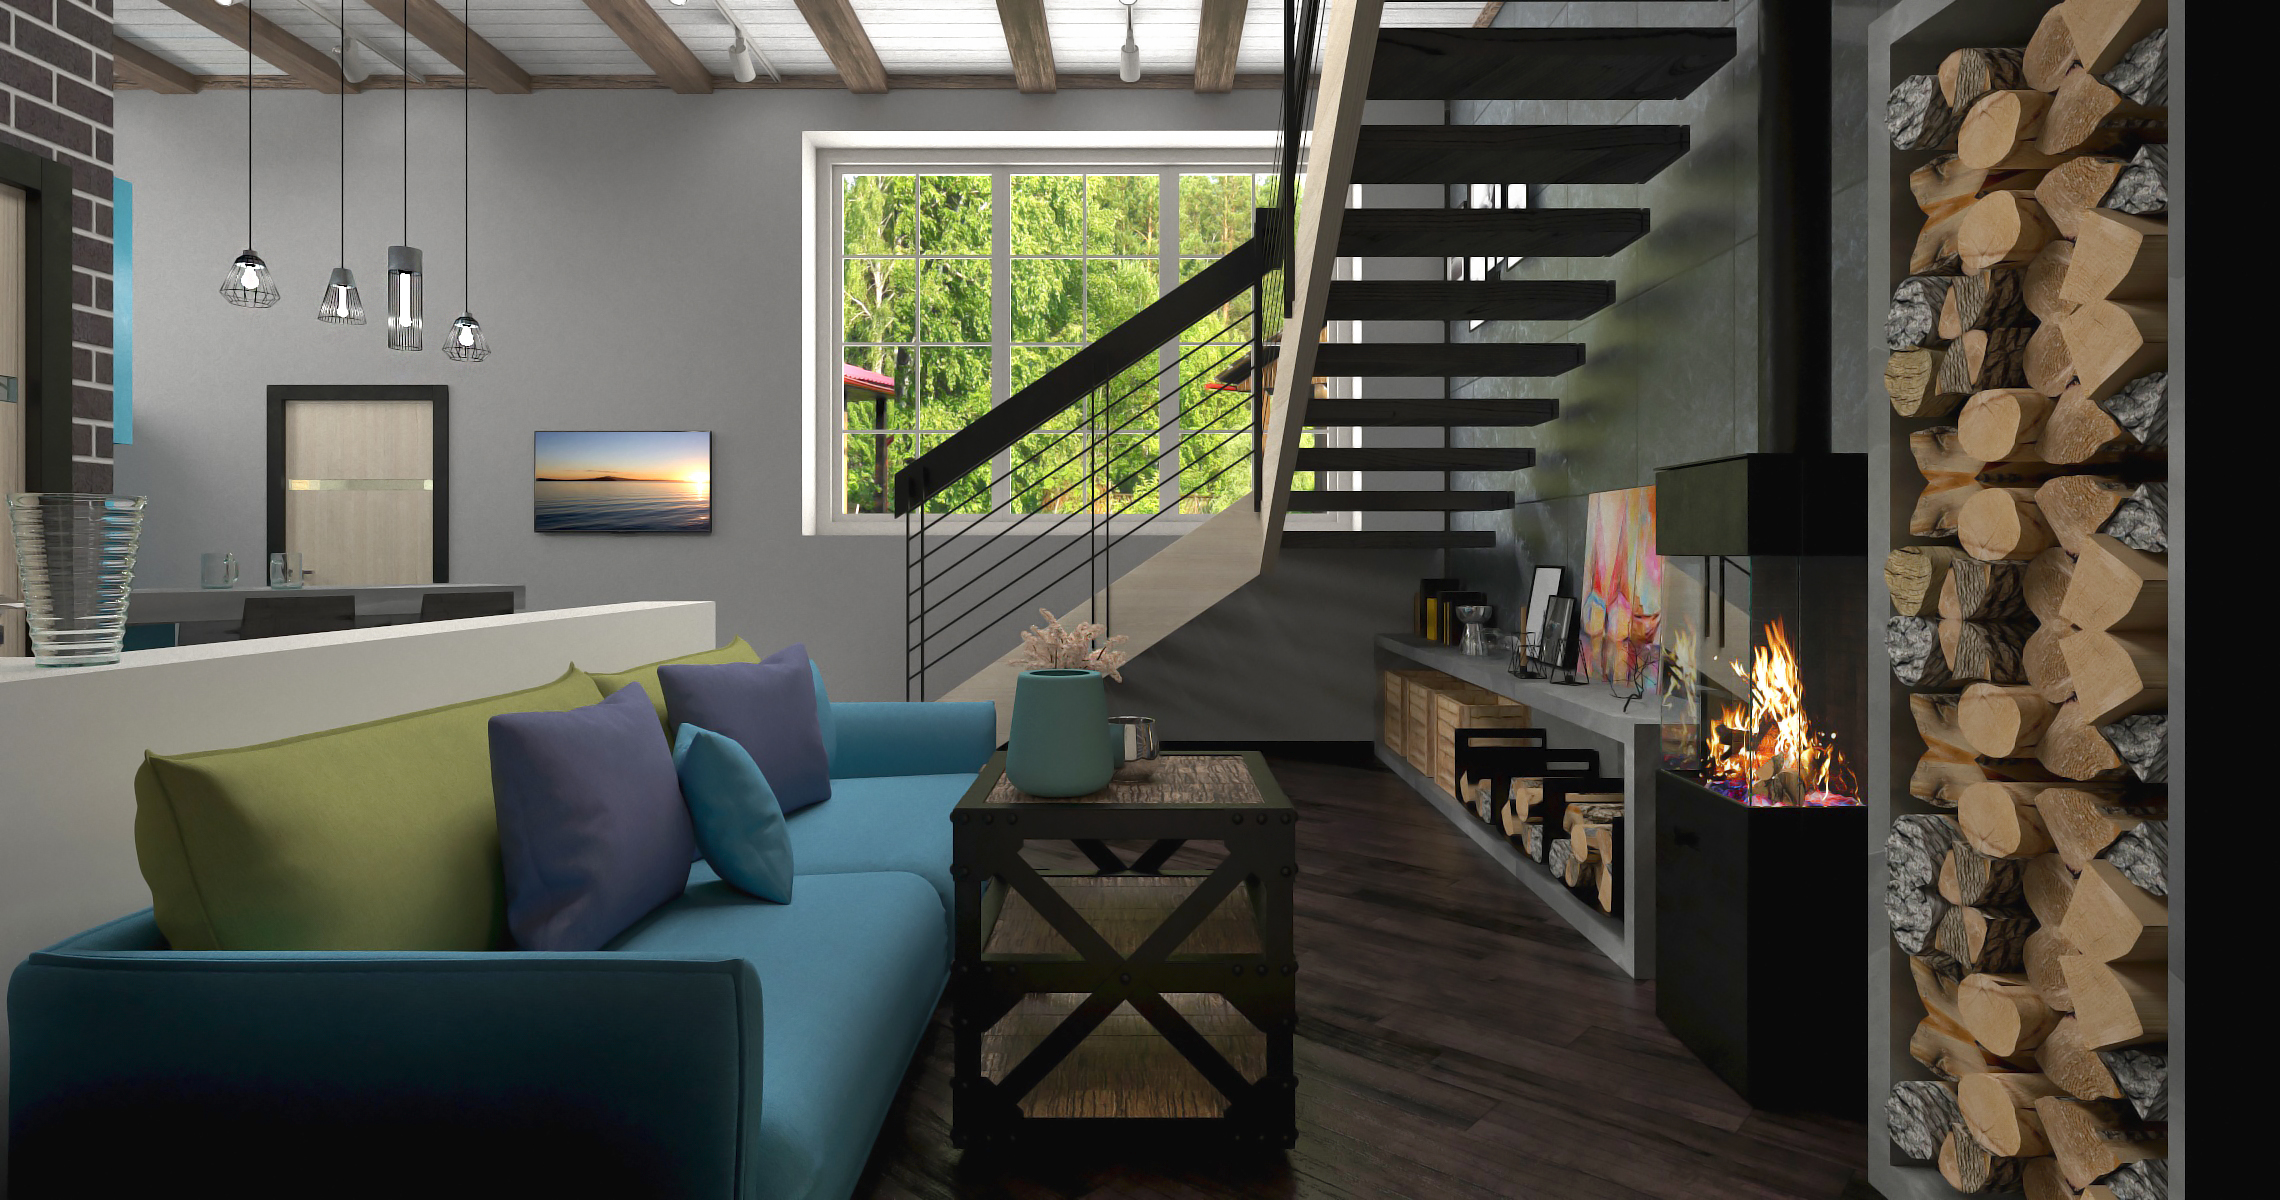 Interior de uma cozinha sala de estar em 3d max corona render imagem